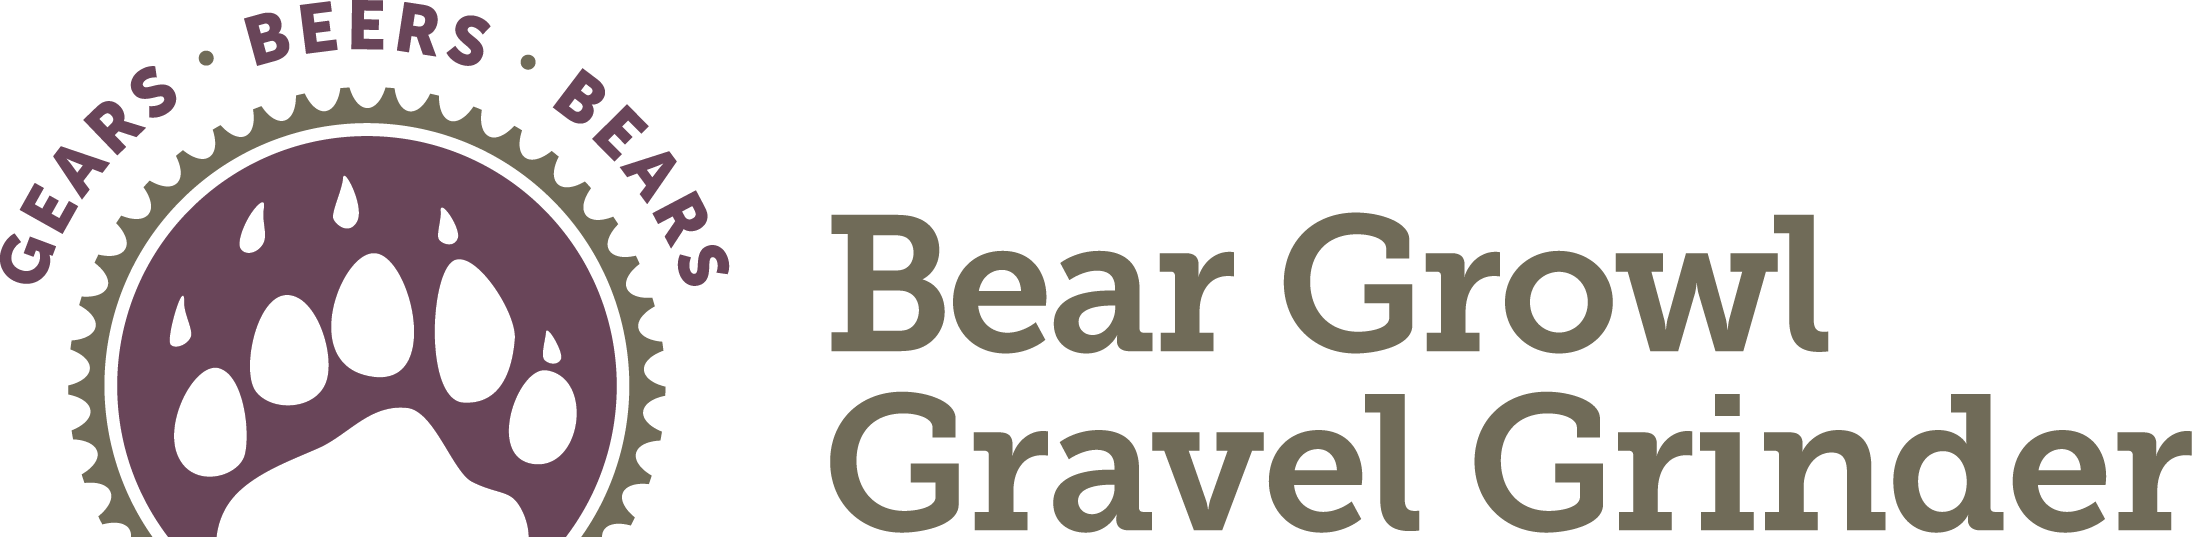 Grinder Logo - Bear Growl Gravel Grinder